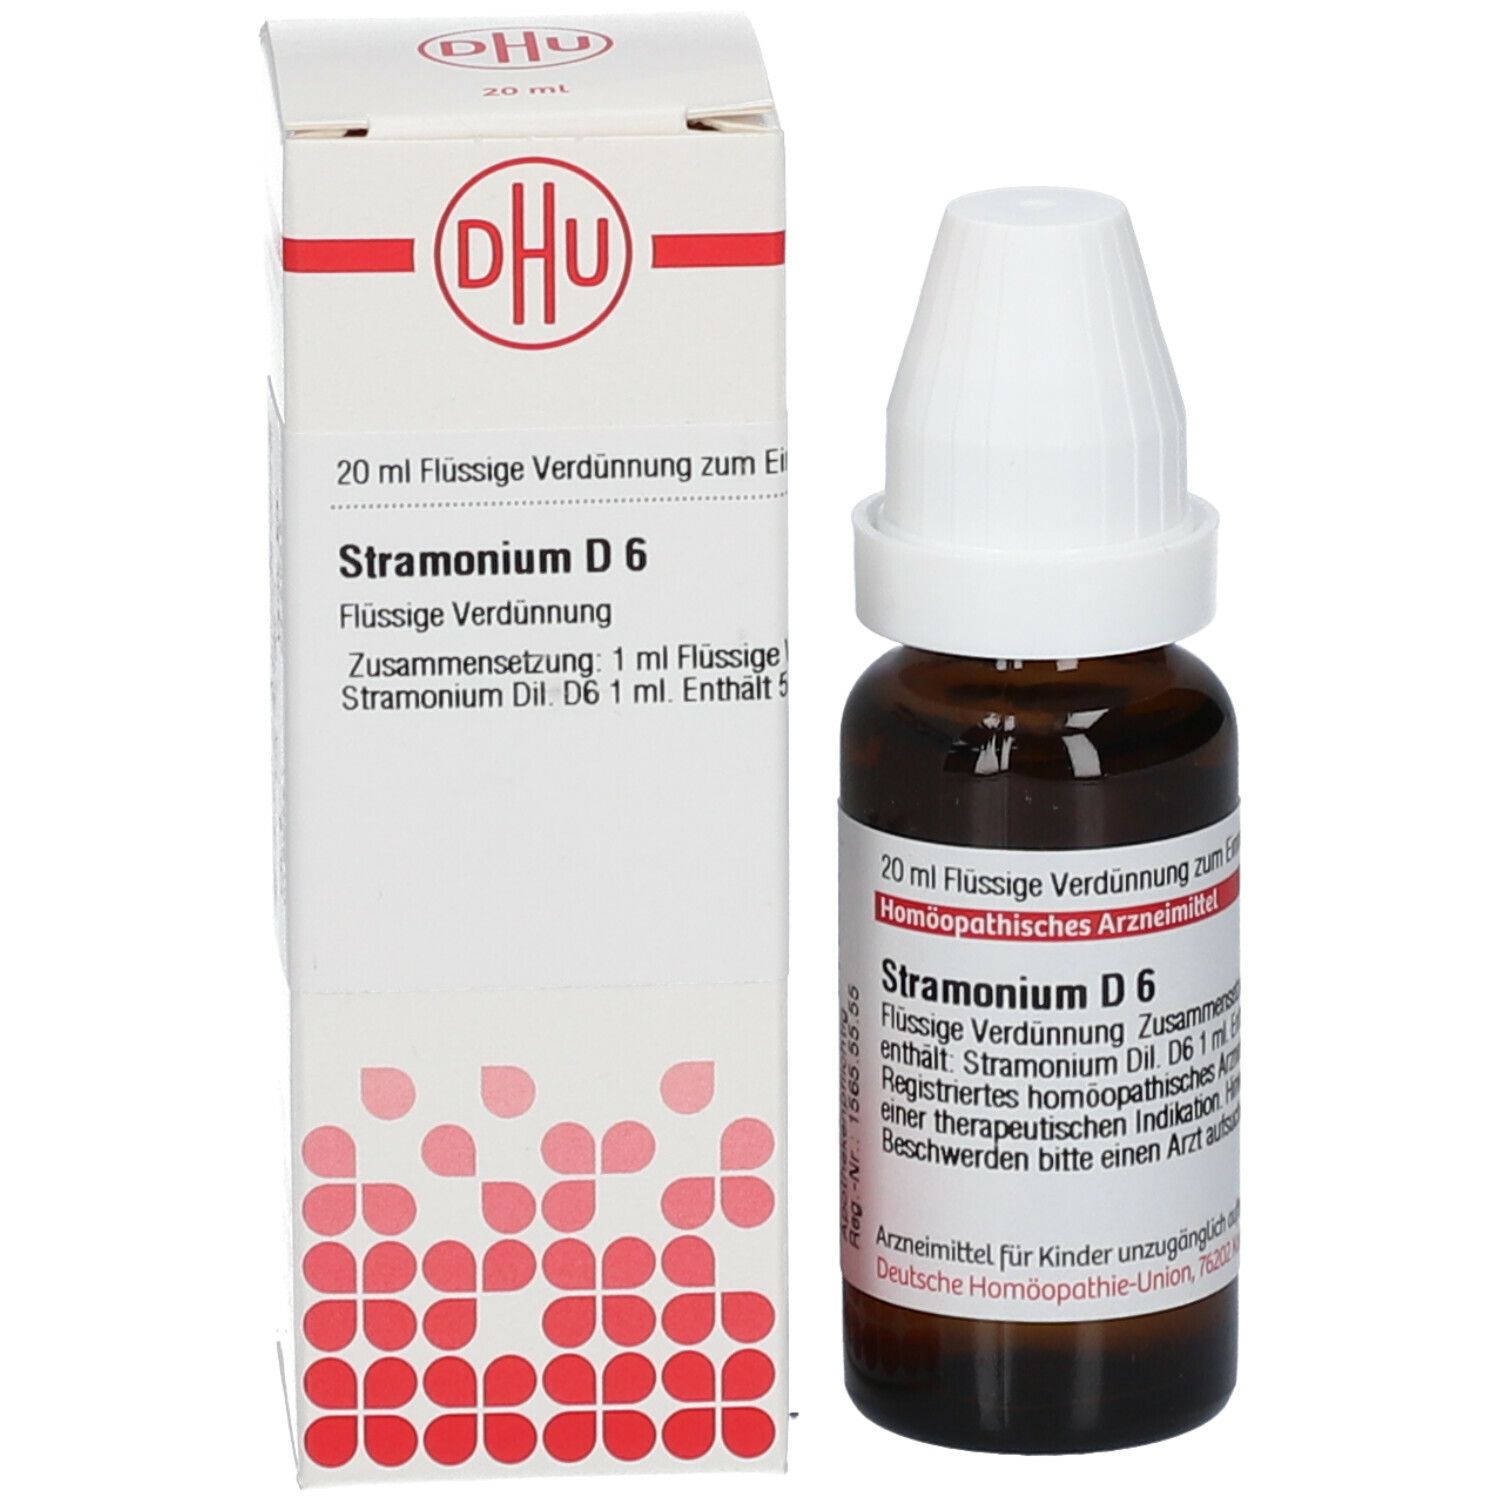 DHU Stramonium D6